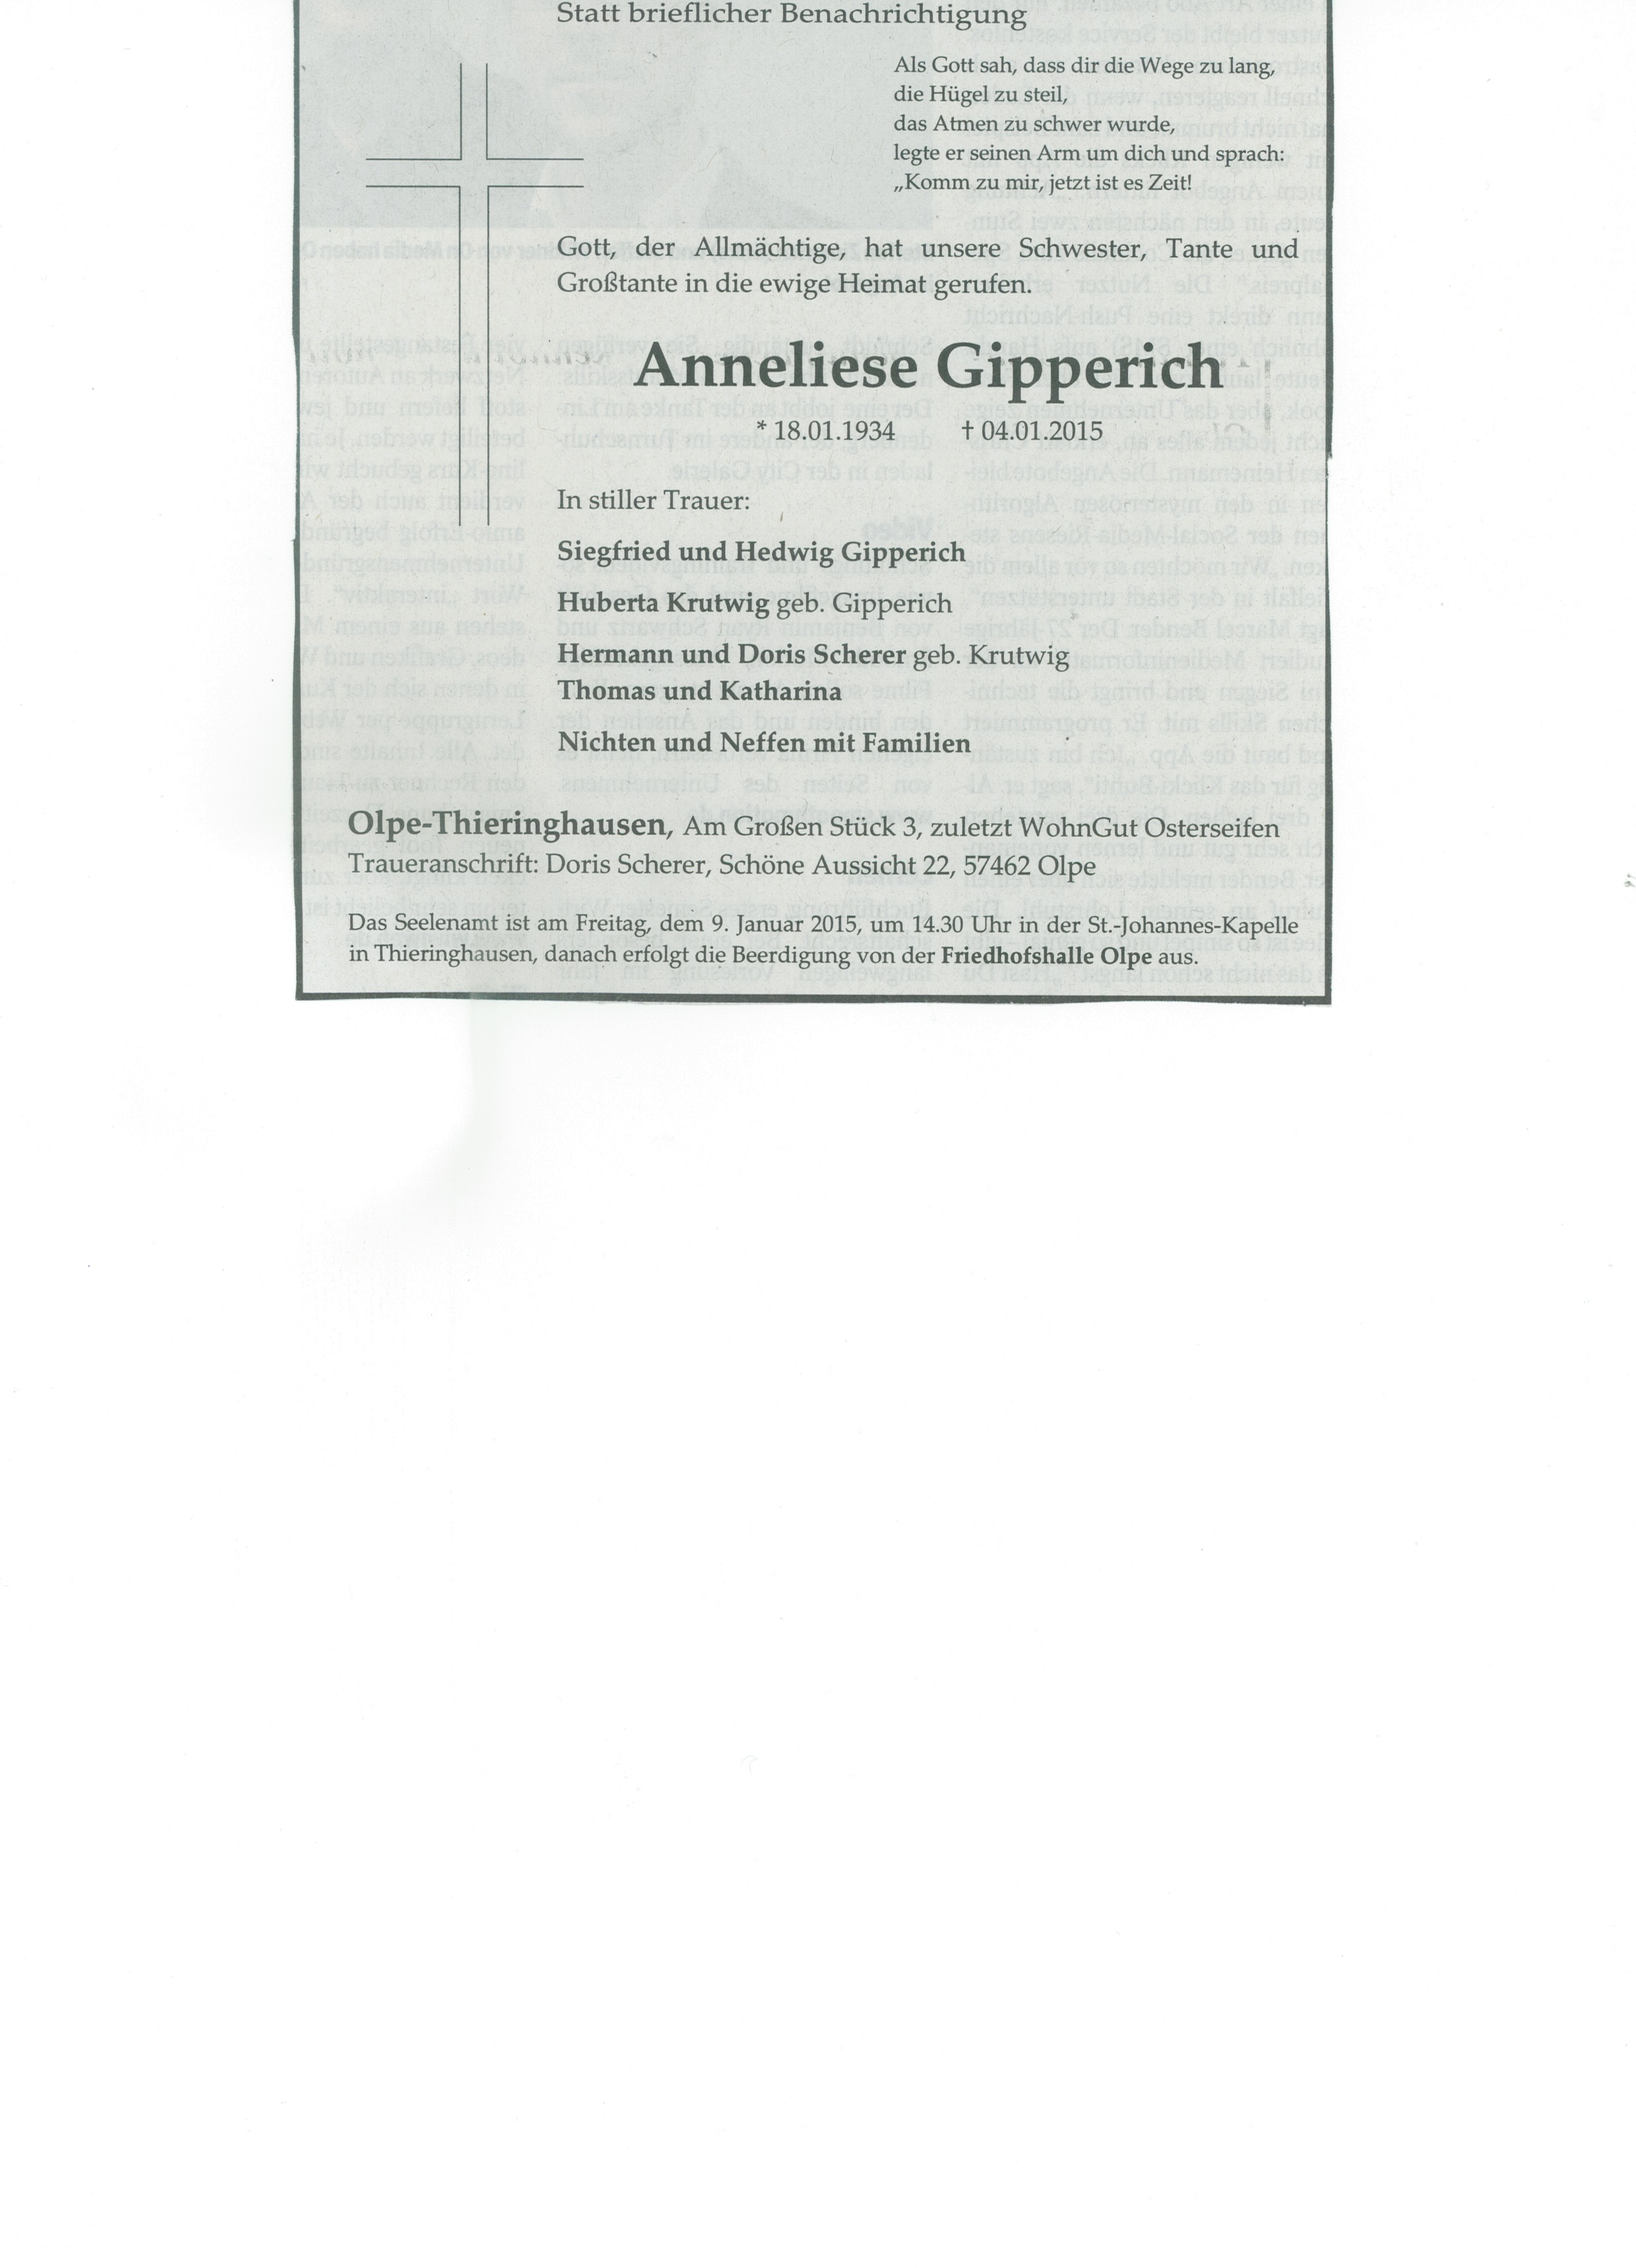 Traueranzeige Anneliese Gipperich